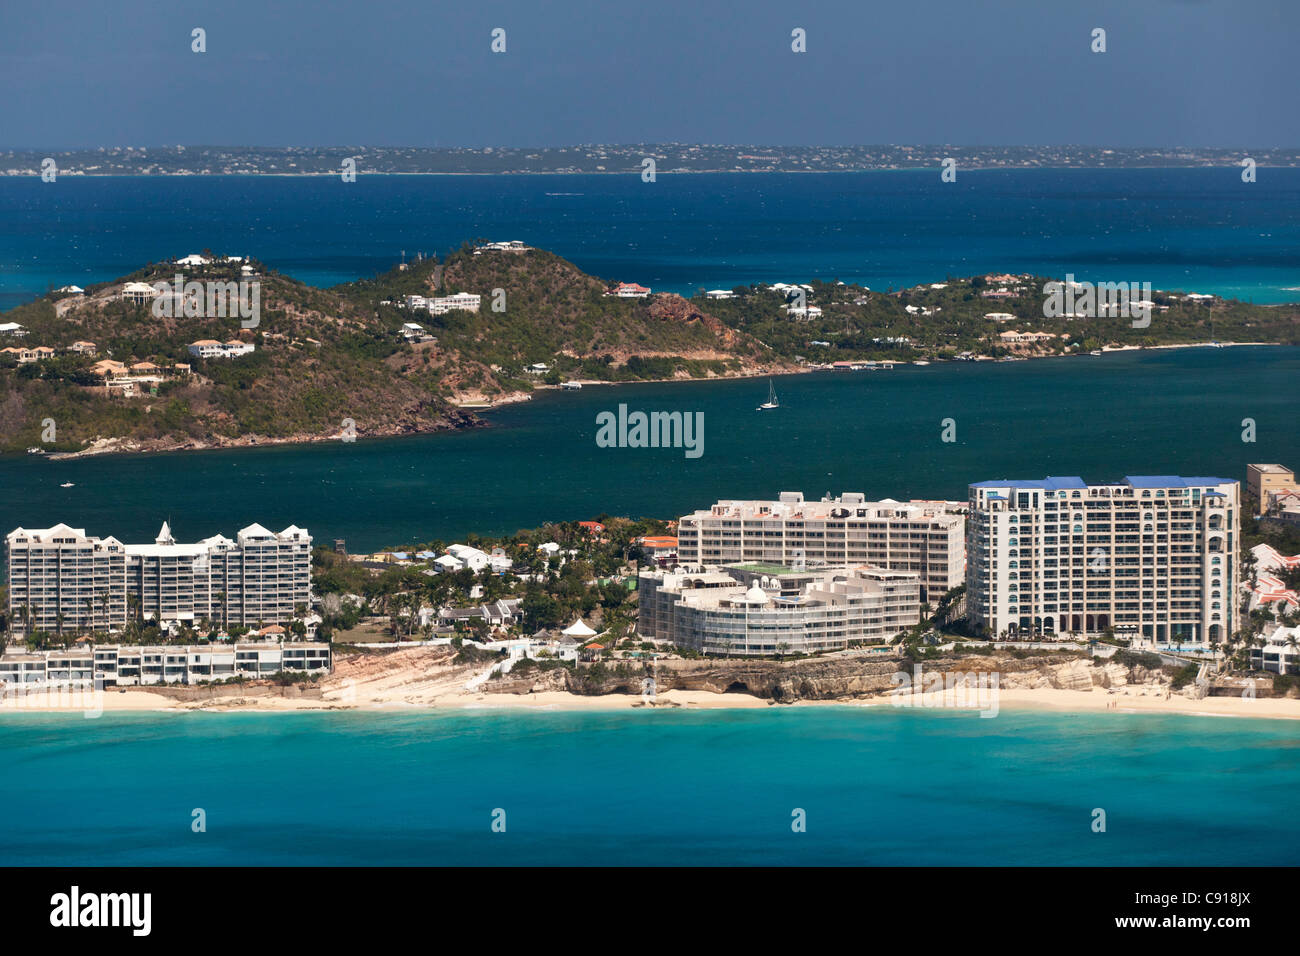 Sint Maarten, île des Caraïbes, indépendante des Pays-Bas depuis 2010. Philipsburg. Simpson Bay et le lagon. Vue aérienne. Banque D'Images